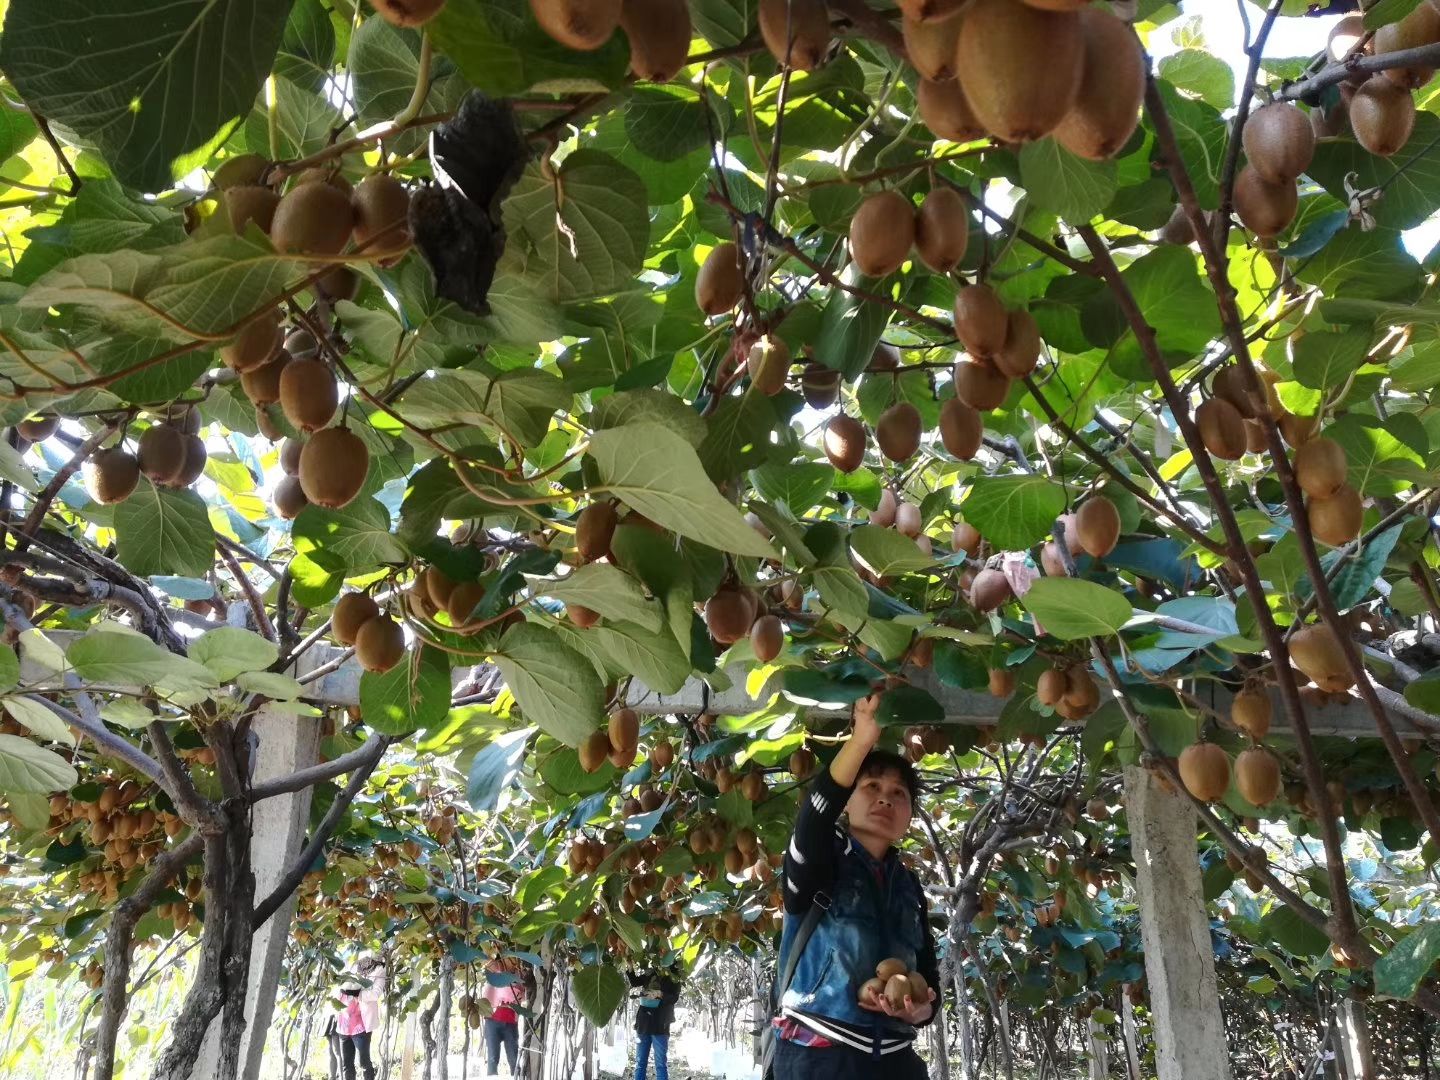 周至县 猕猴桃
一年就卖一次，卖的是辛苦的劳动成果